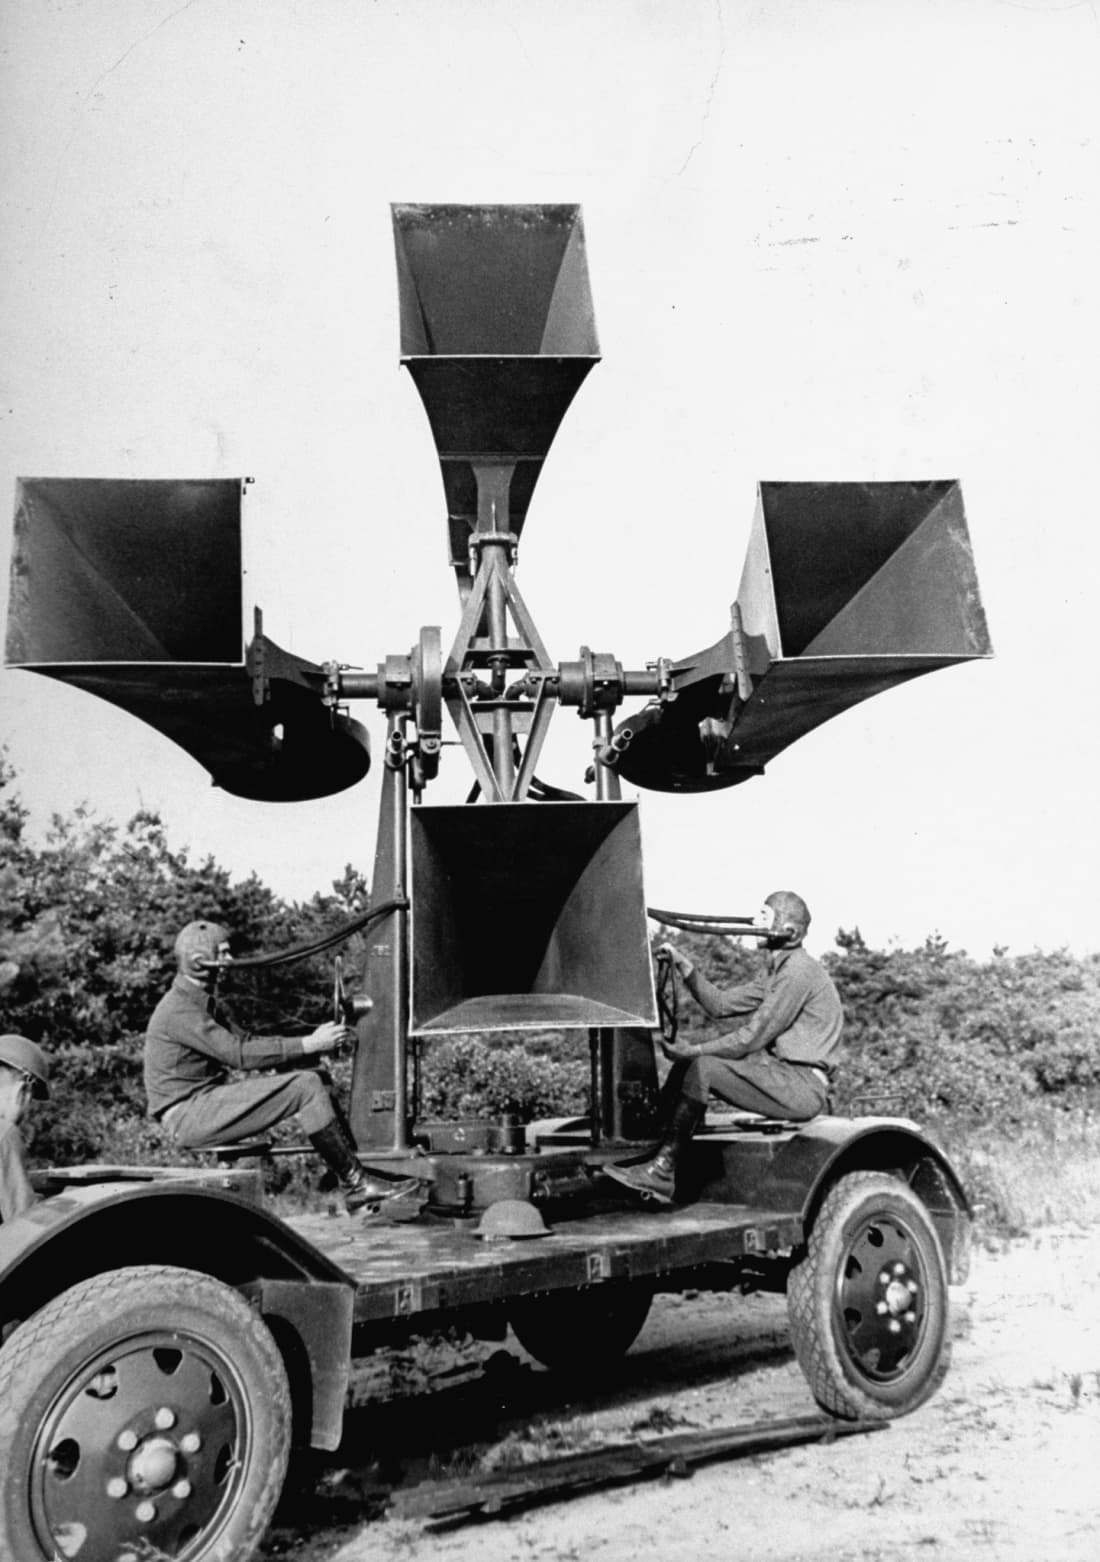 レーダー導入後、聴音機を運ぶ車両の一部は他の用途に転用された/Carl Mydans/The LIFE Picture Collection/The LIFE Picture Collection/Gett